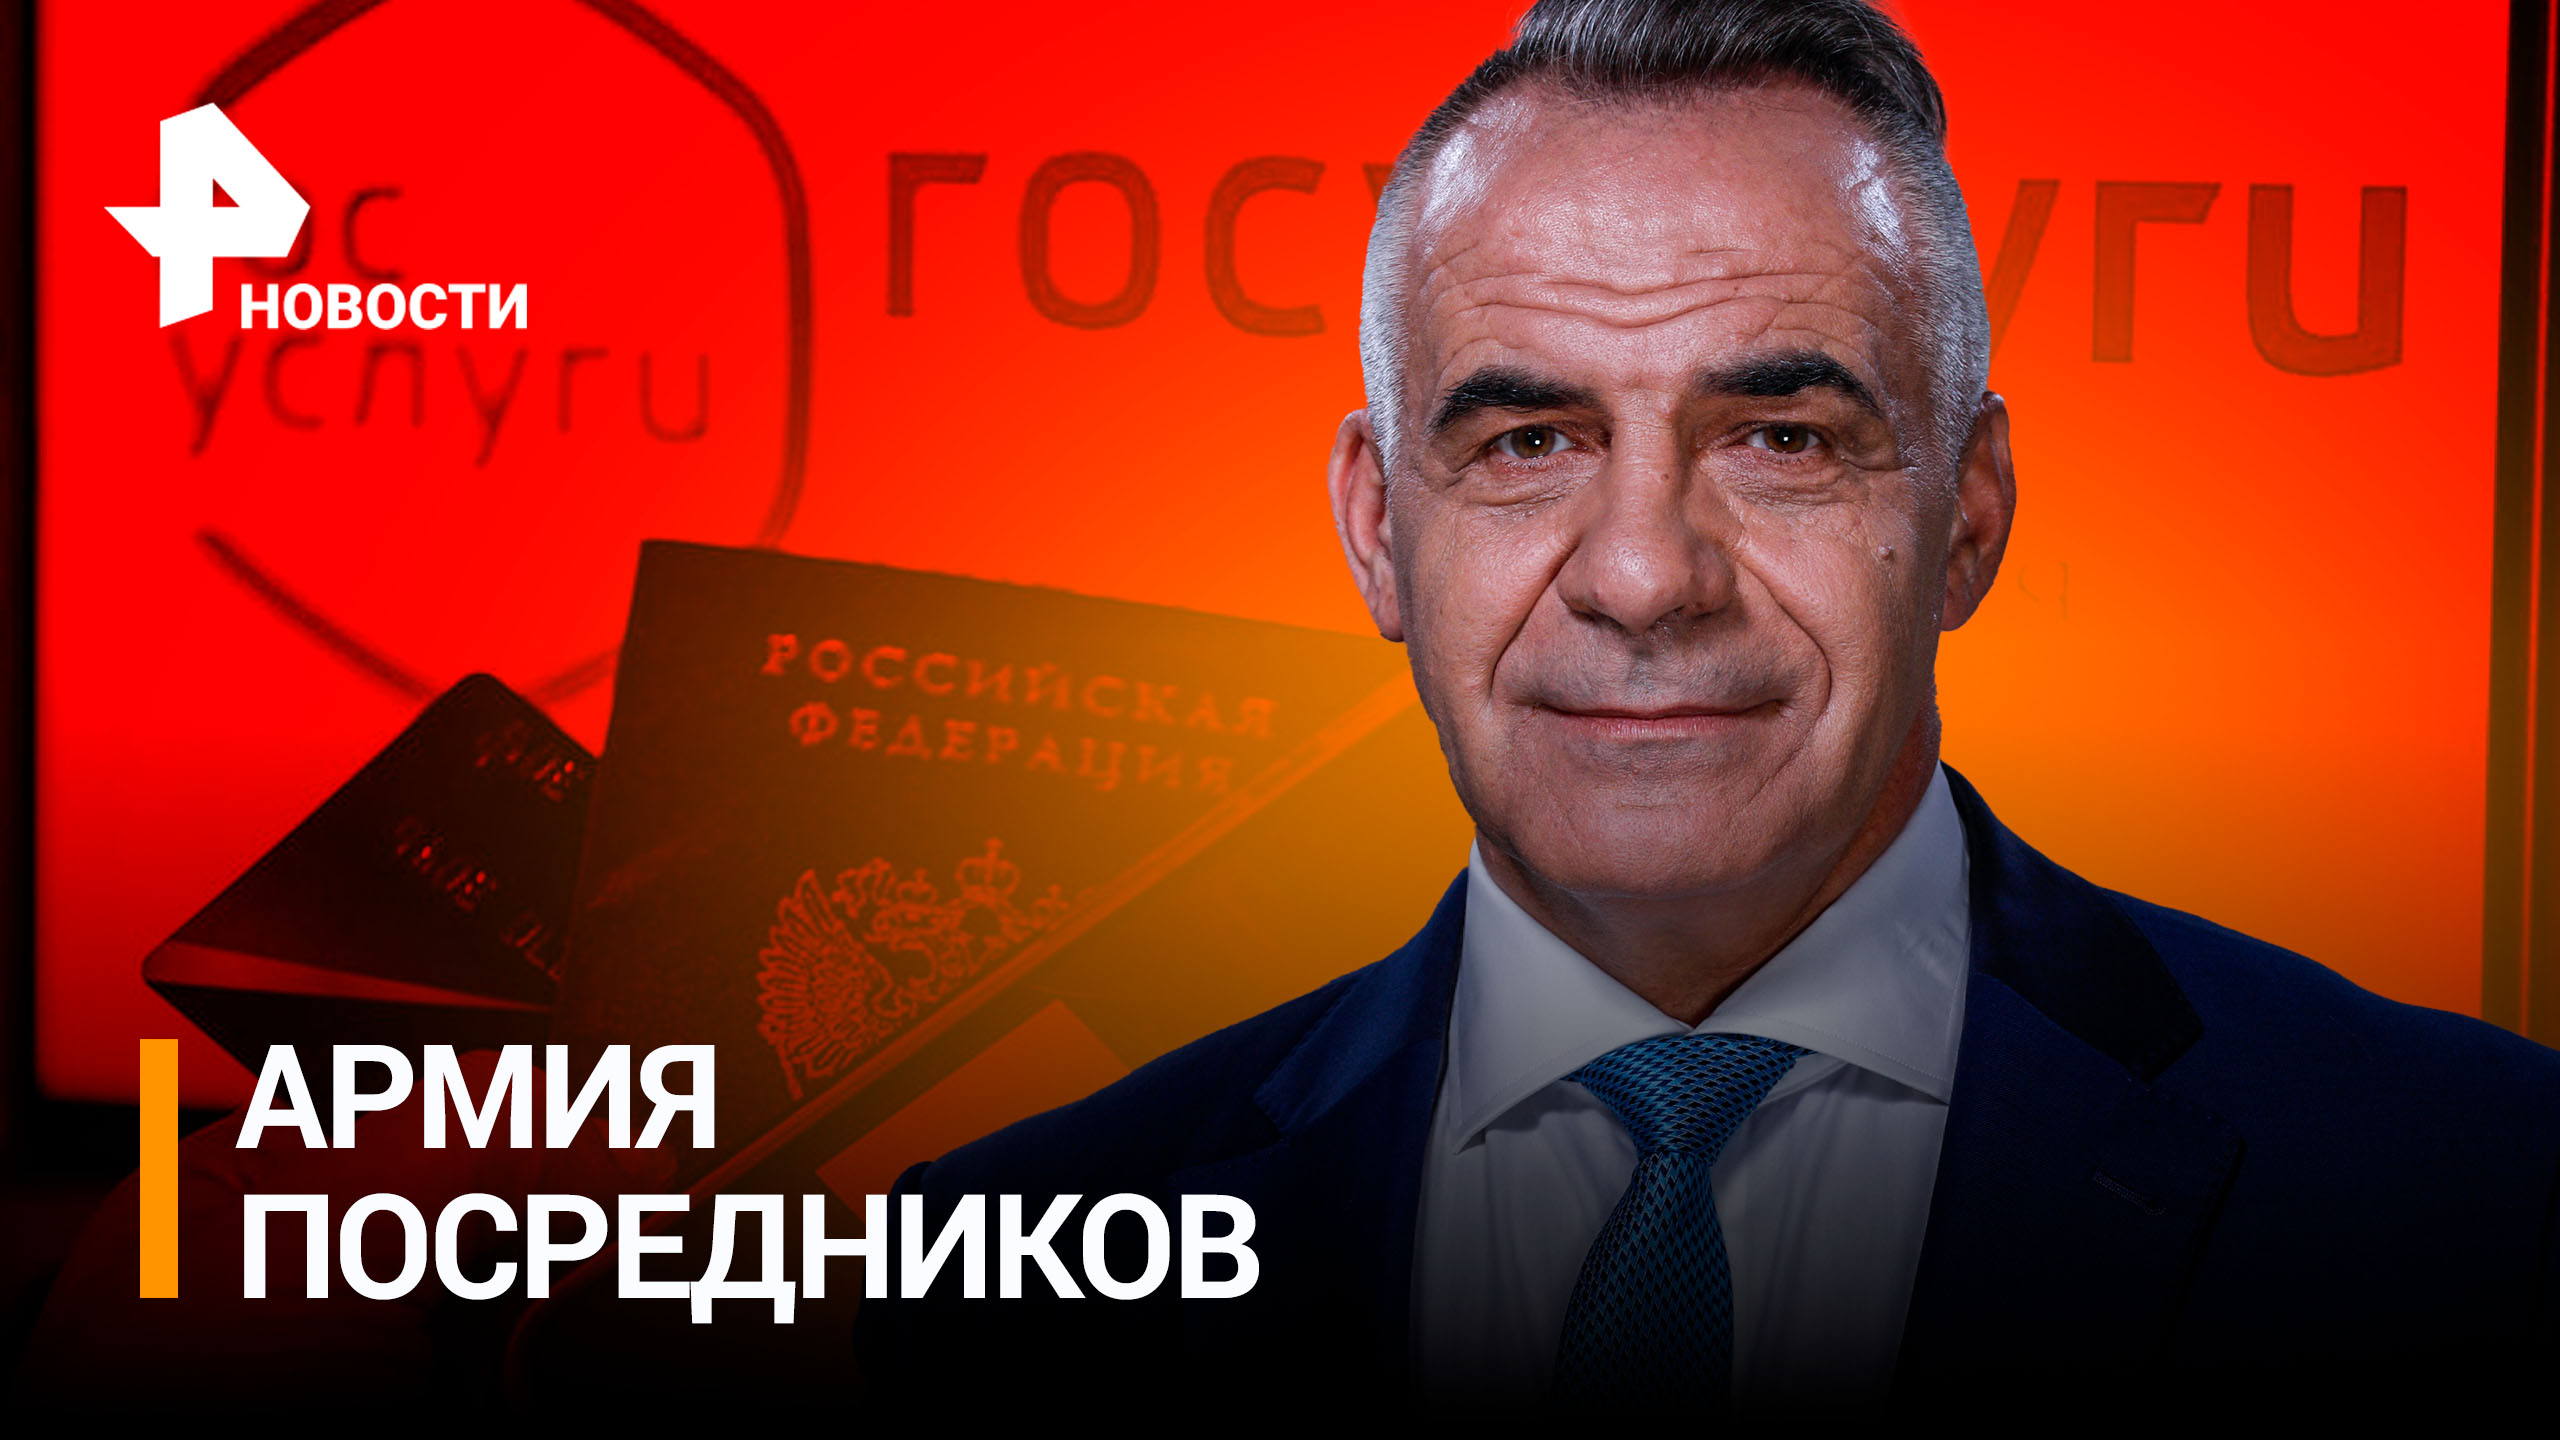 Как наживаются на россиянах, продавая им бесплатные госуслуги / РЕН Новости